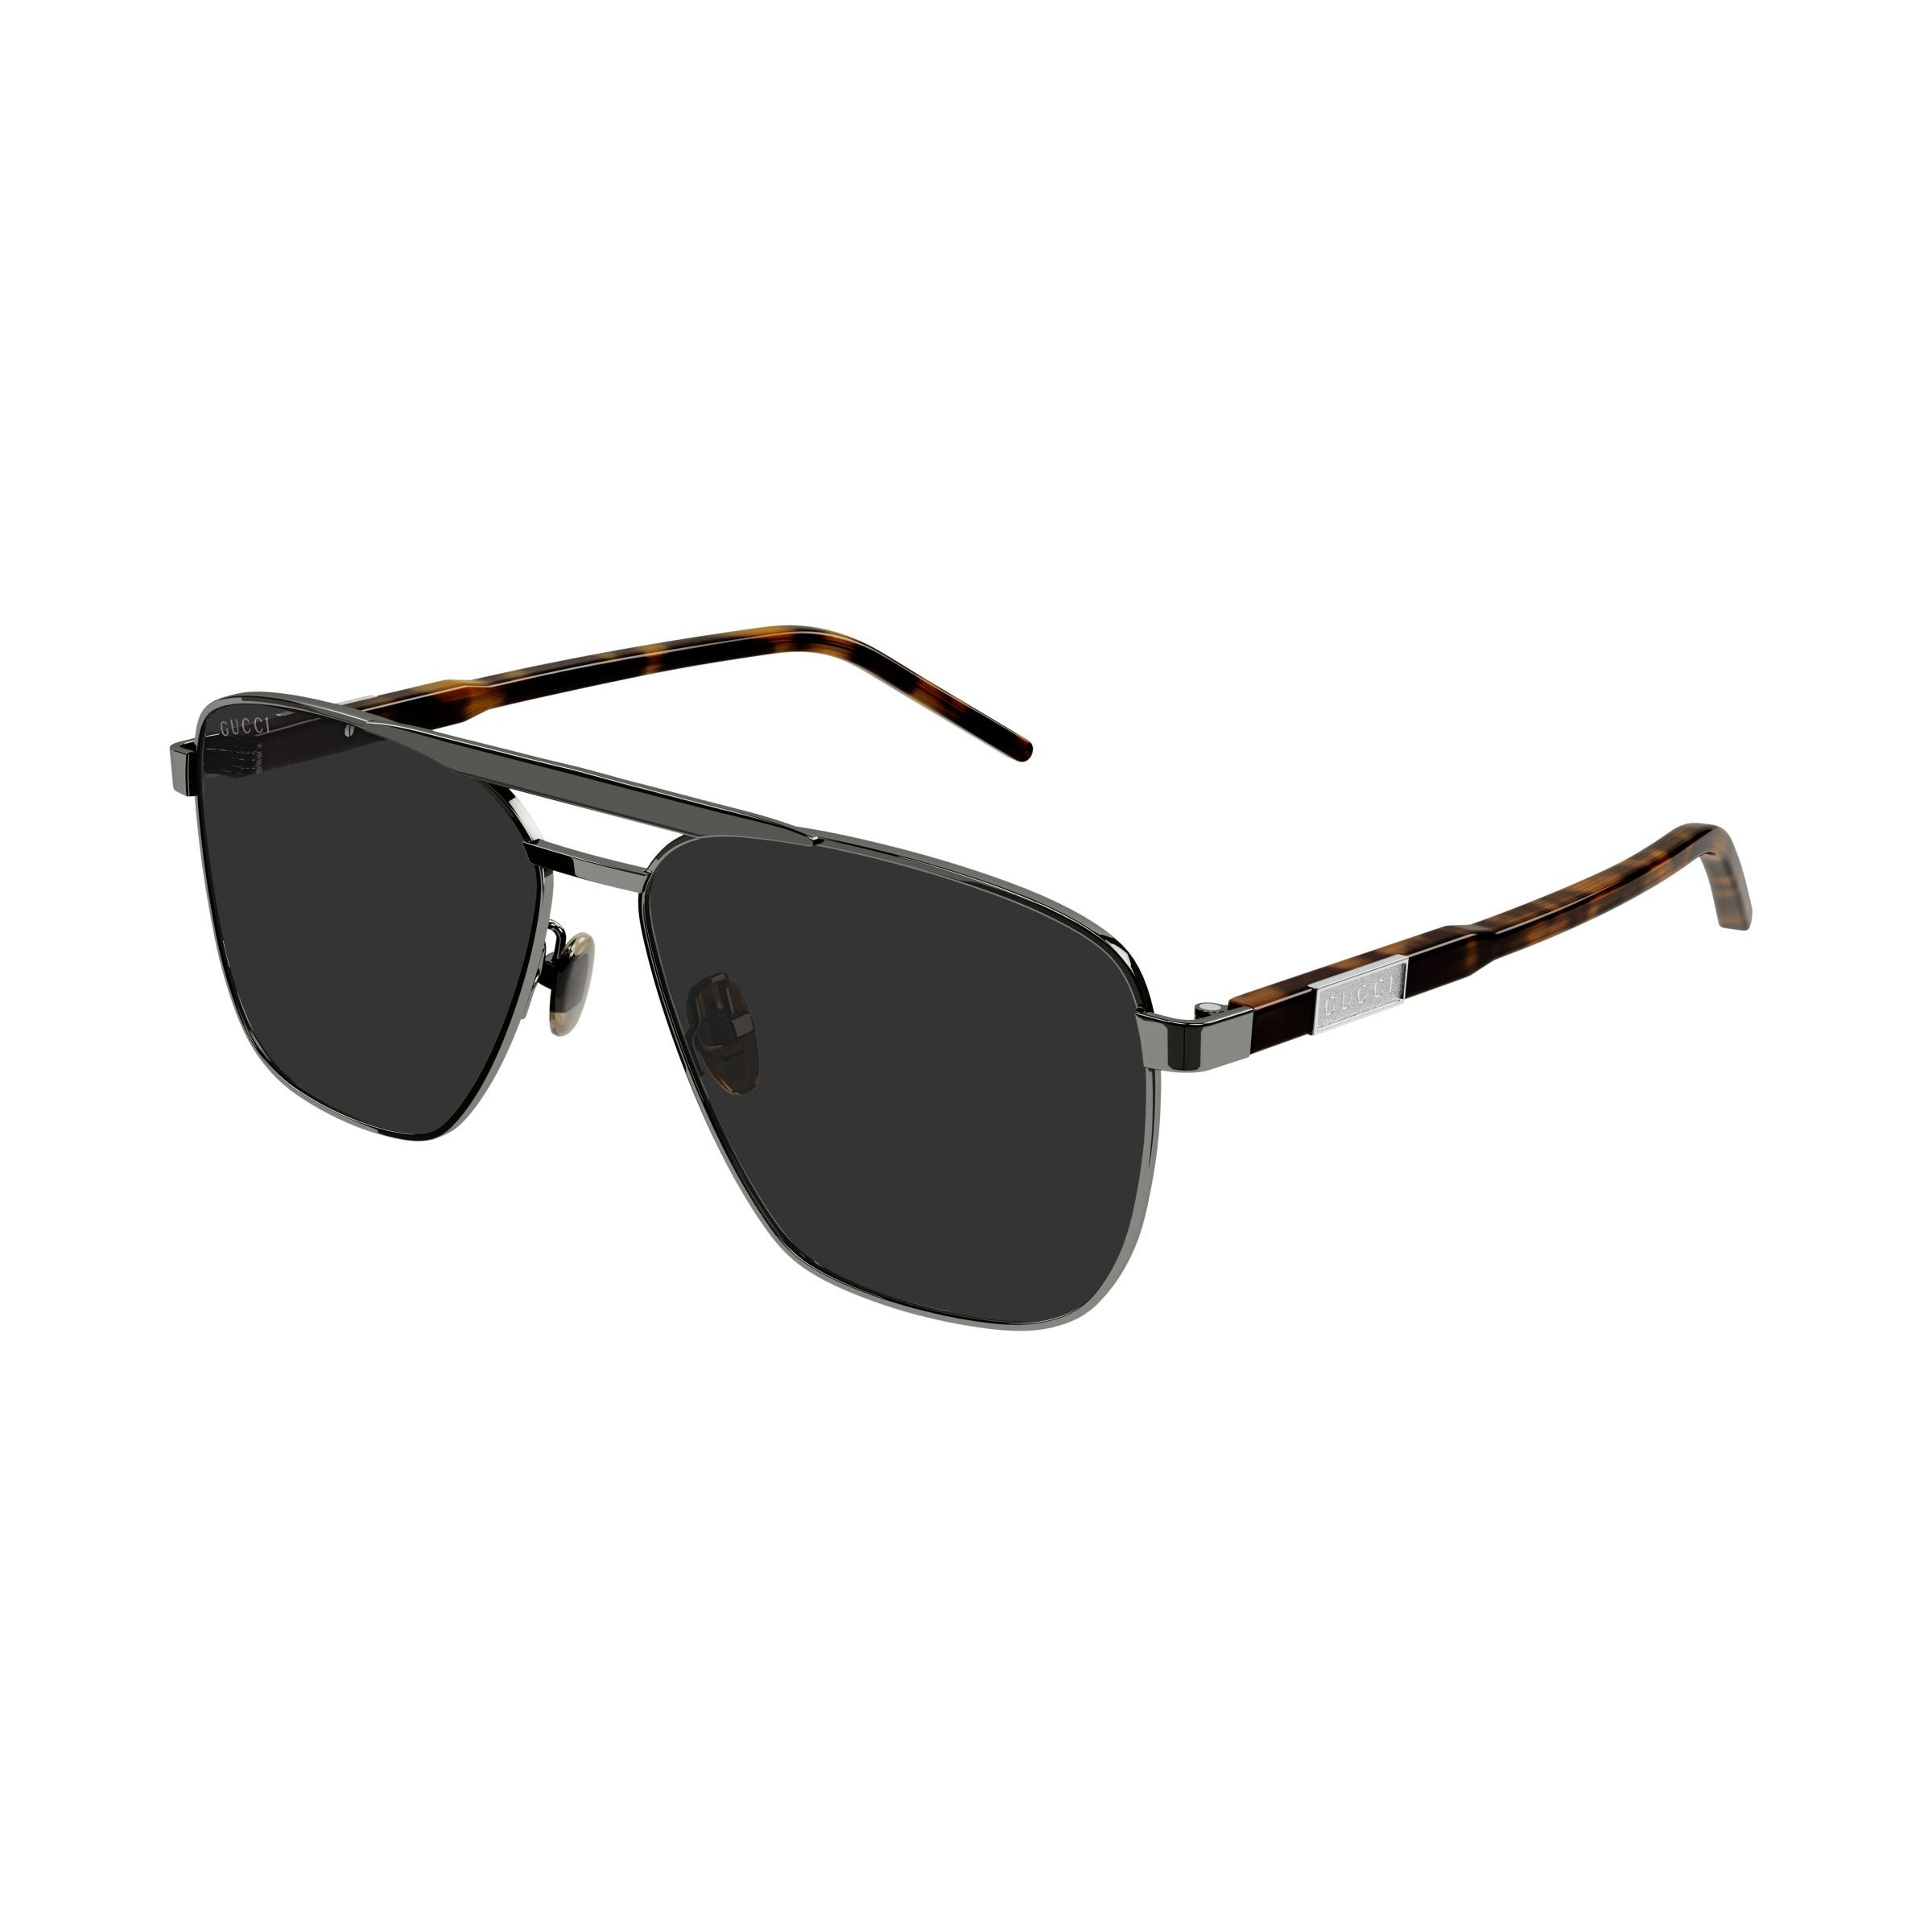 GG1164S Square Sunglasses 1 - size 58